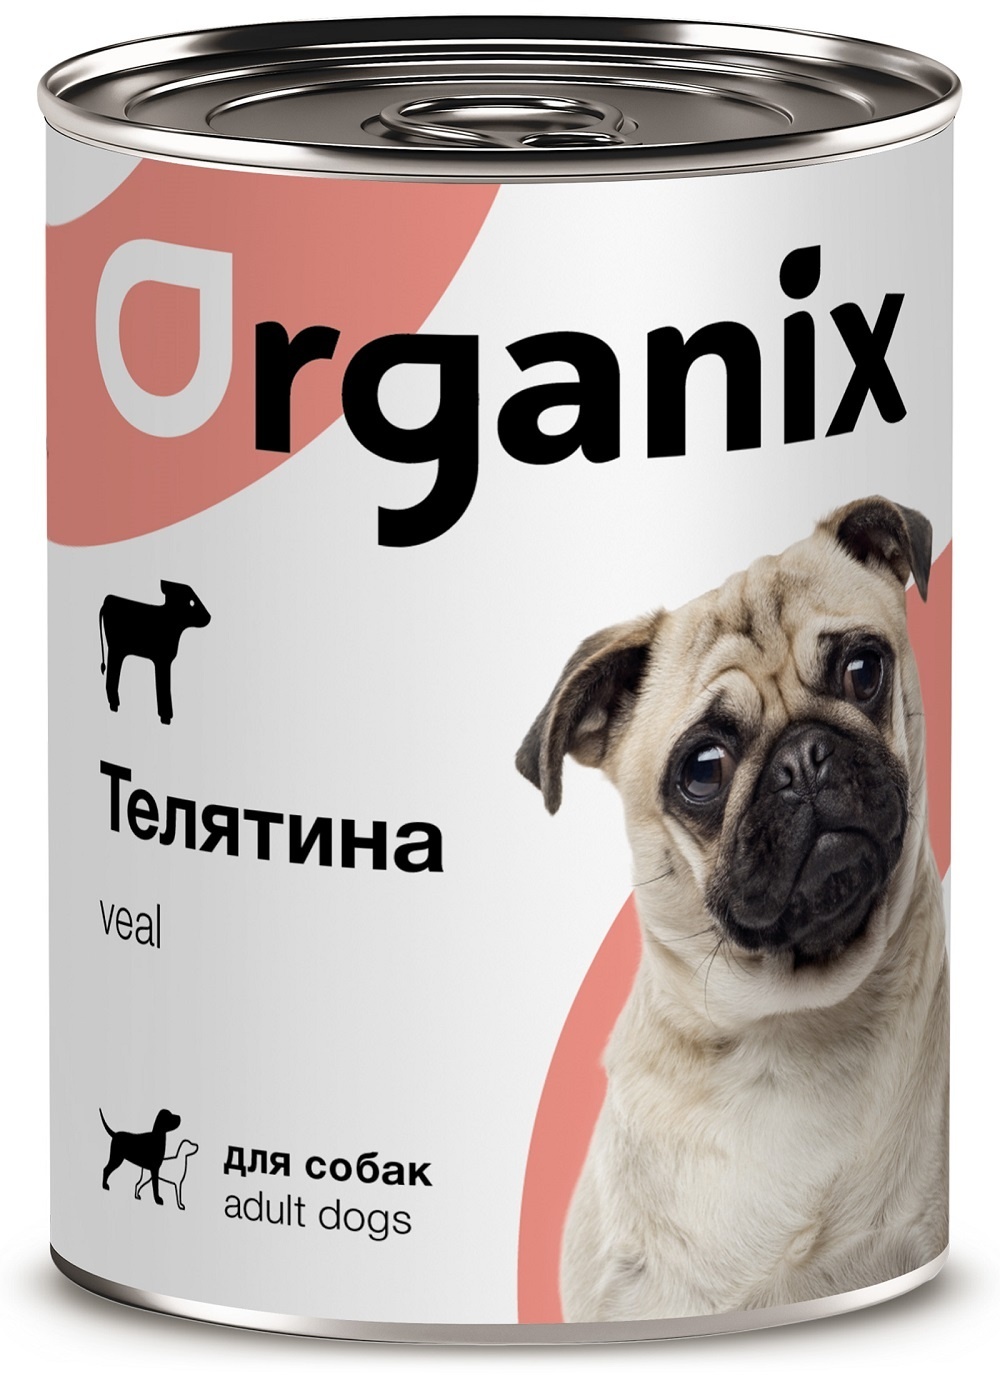 Organix консервы Organix консервы с телятиной для собак (100 г) organix консервы organix консервы для кошек с телятиной и языком 100 г